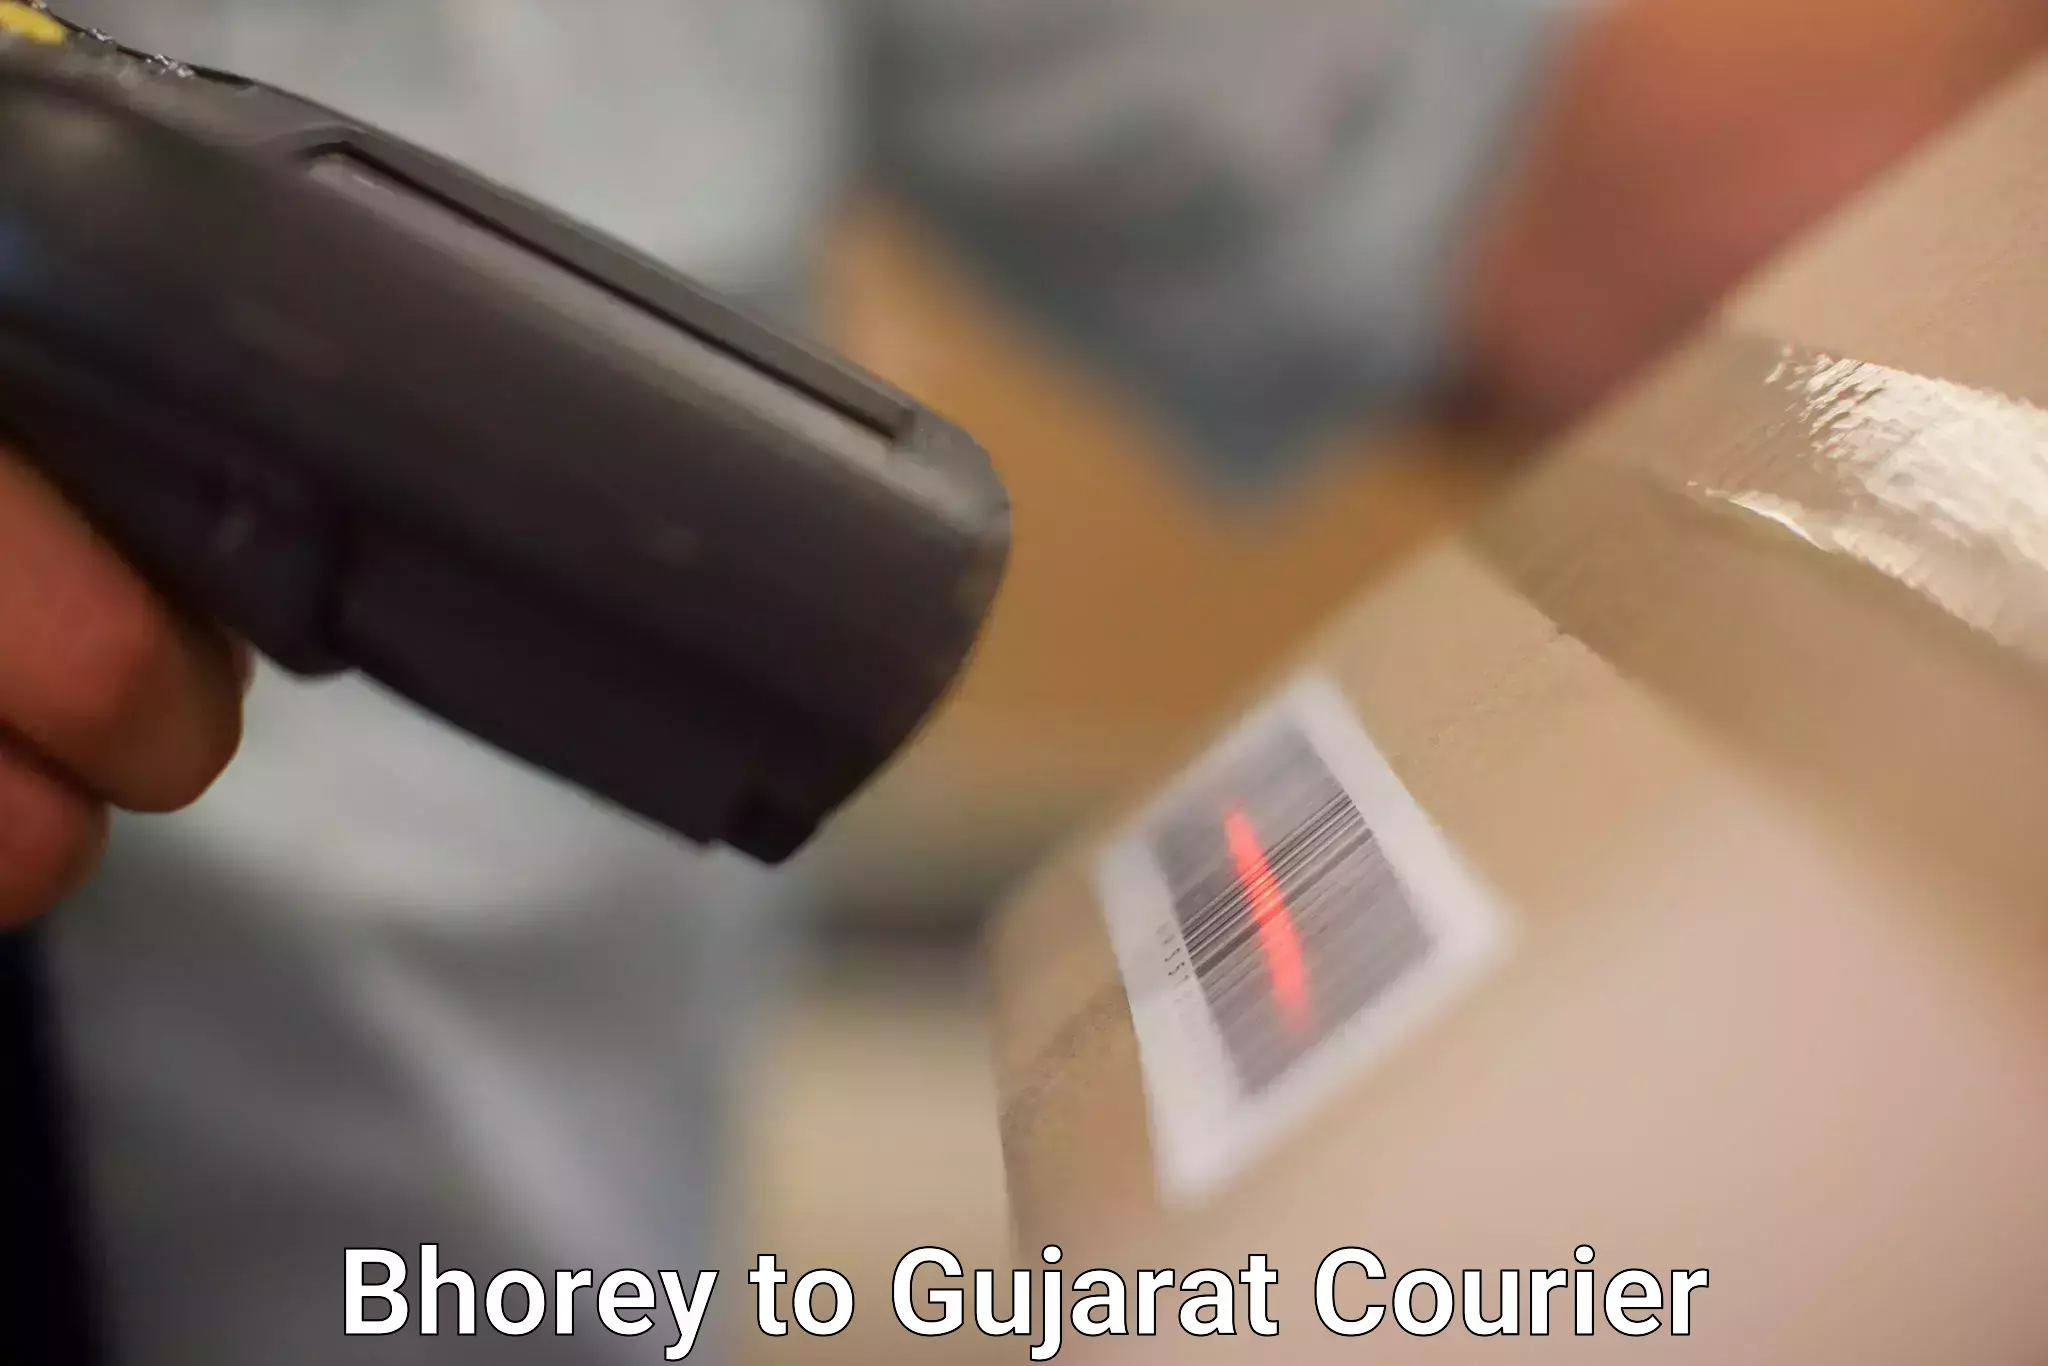 Speedy delivery service Bhorey to Gujarat